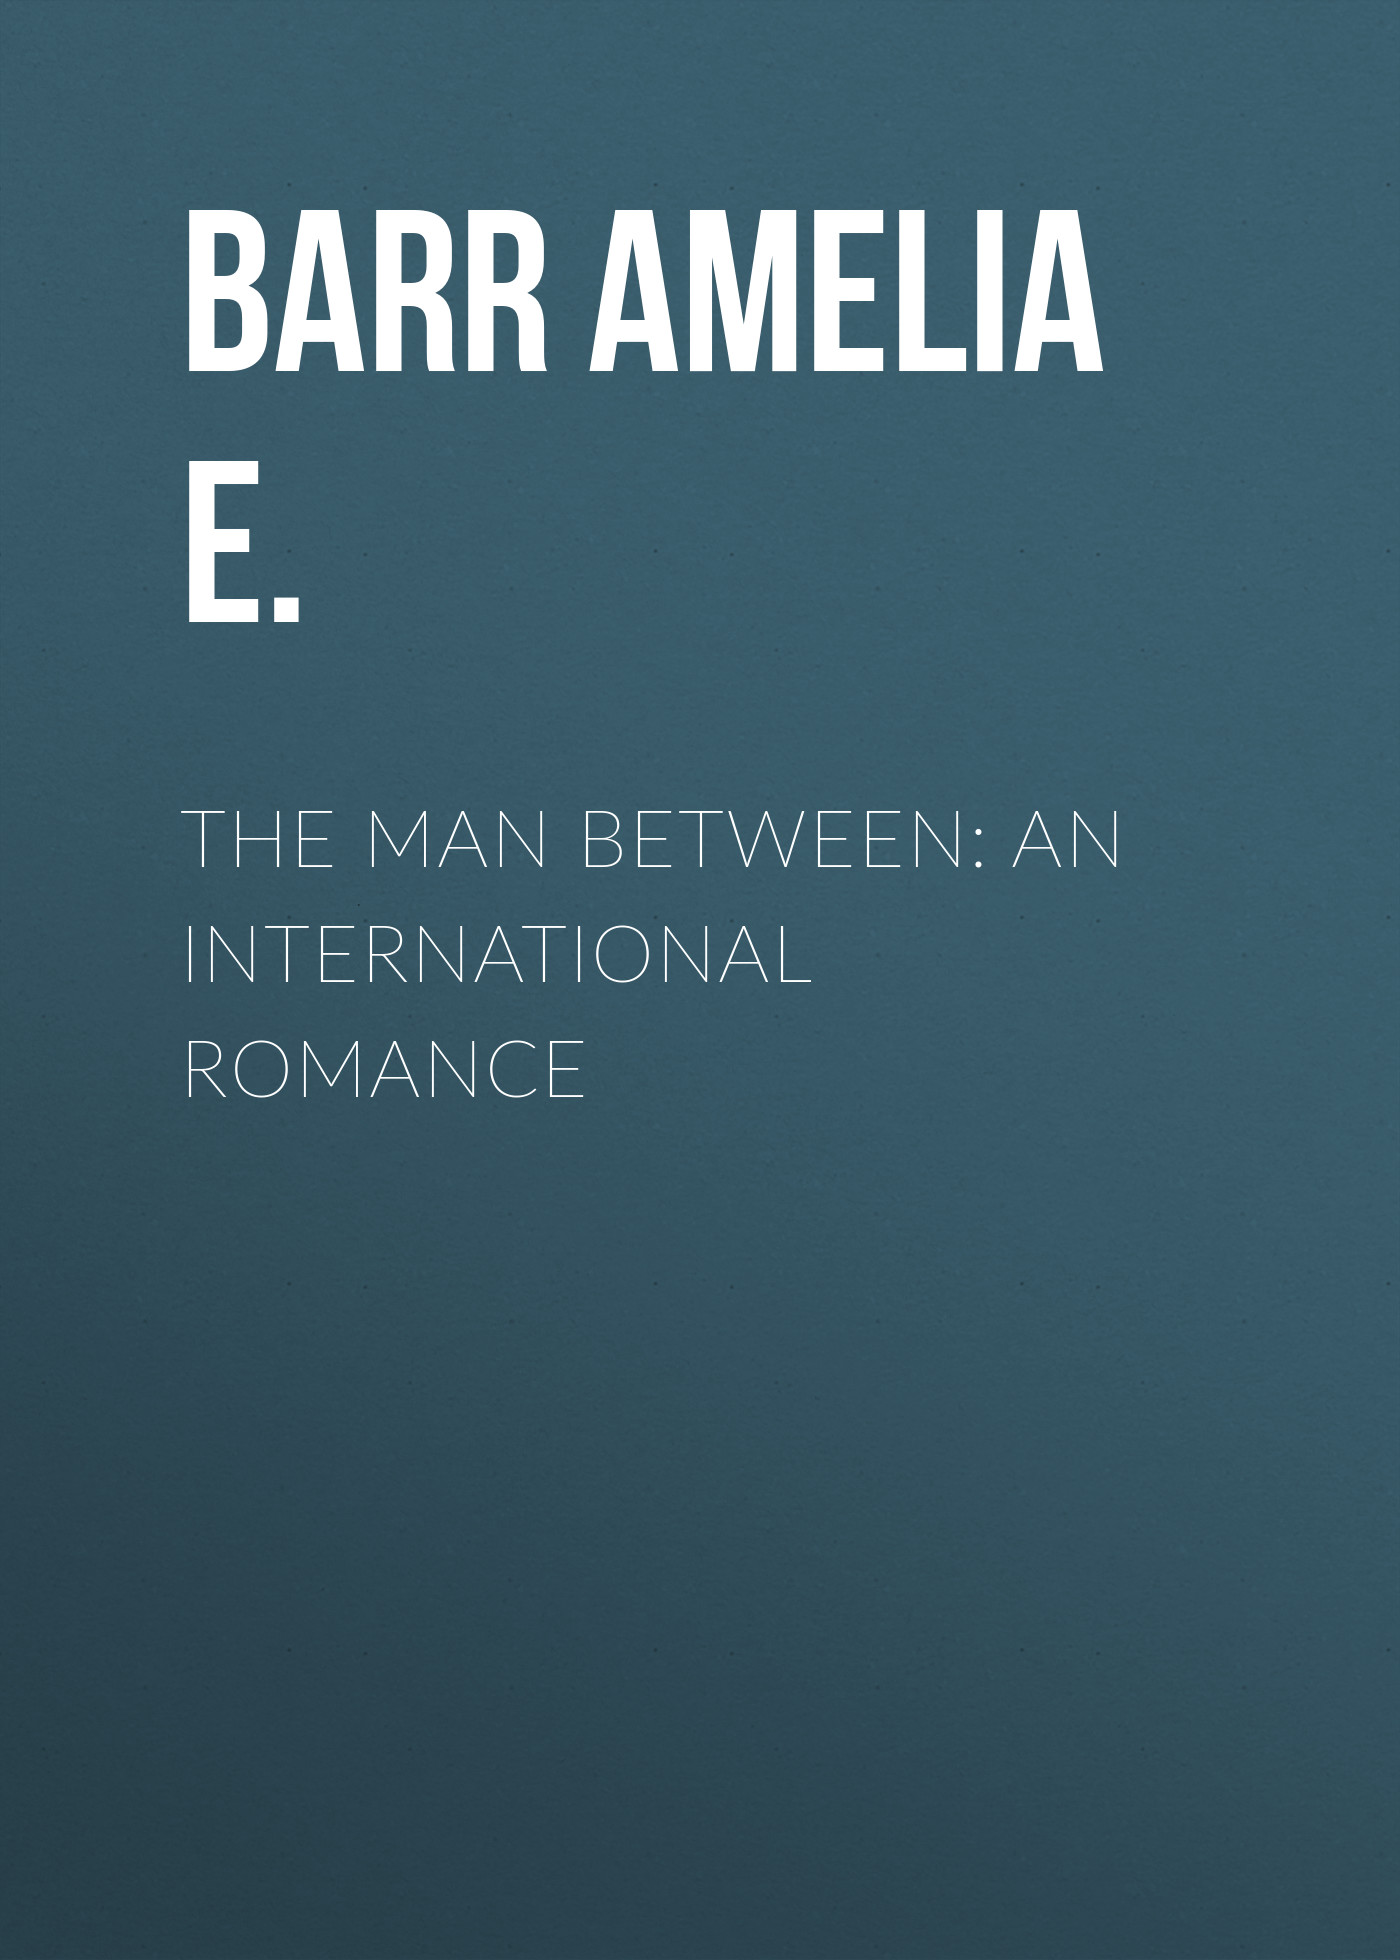 The Man Between: An International Romance